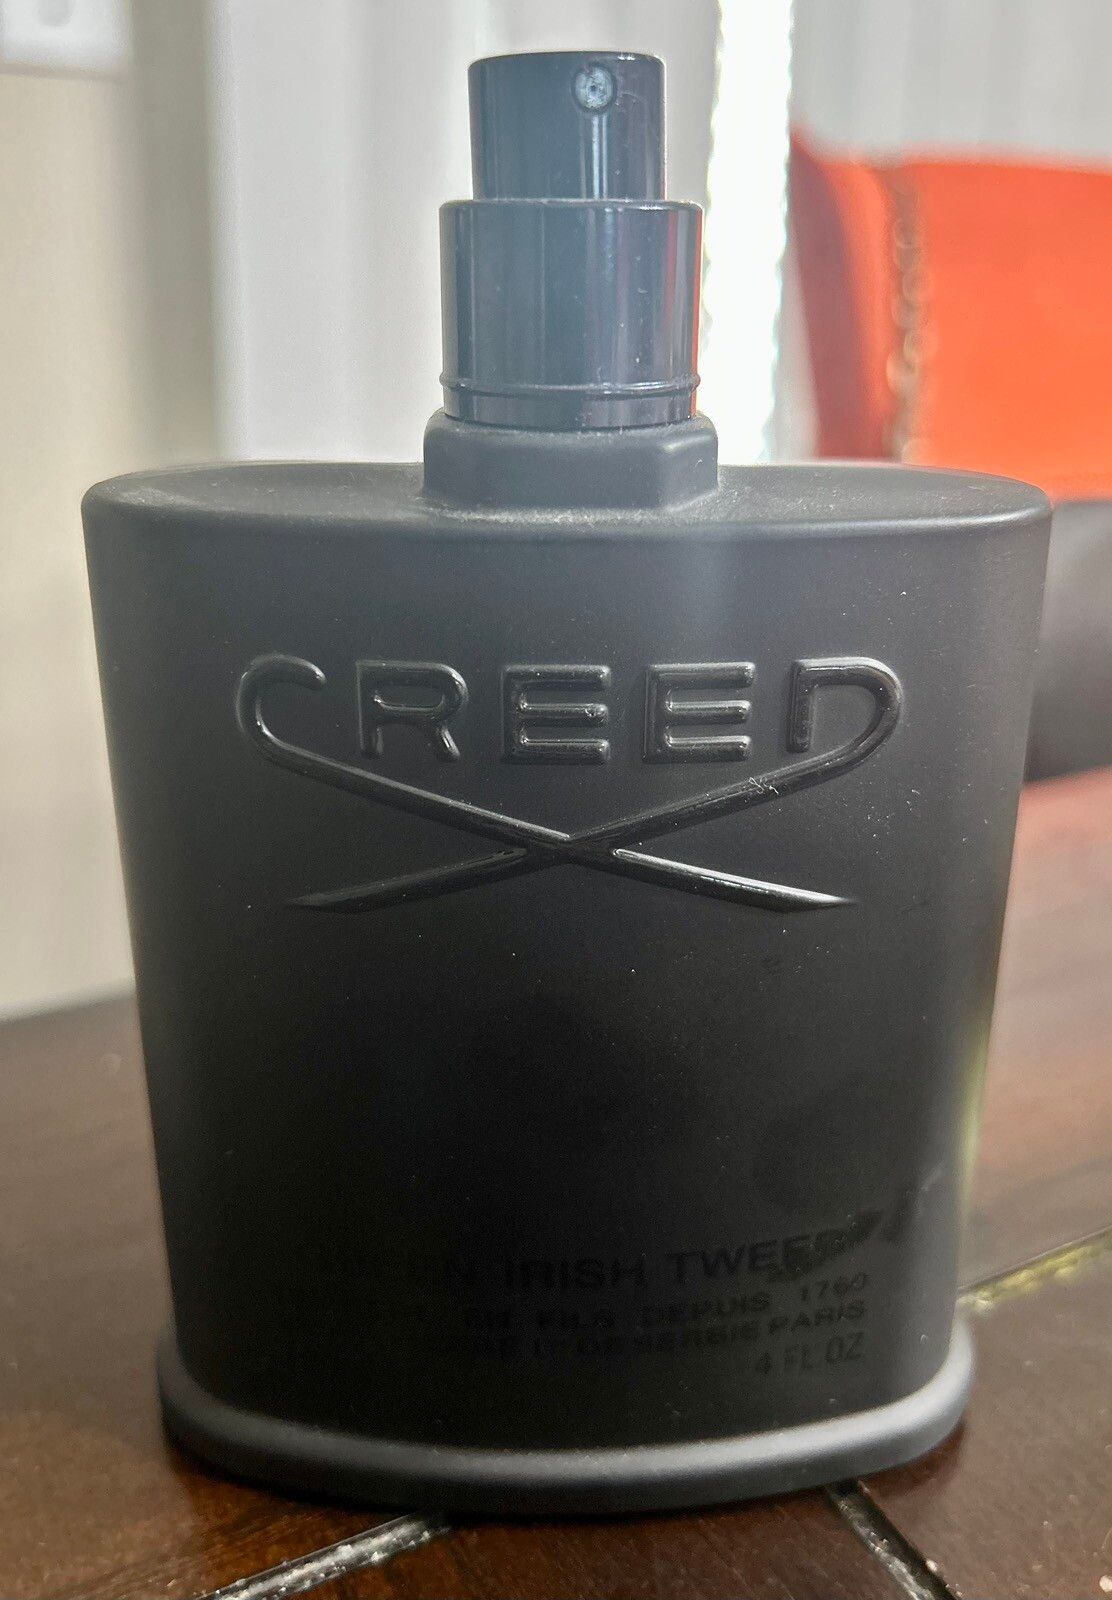 Creed 2015 creed Green Irish tweed 20% with creed Viking 1st batch ...